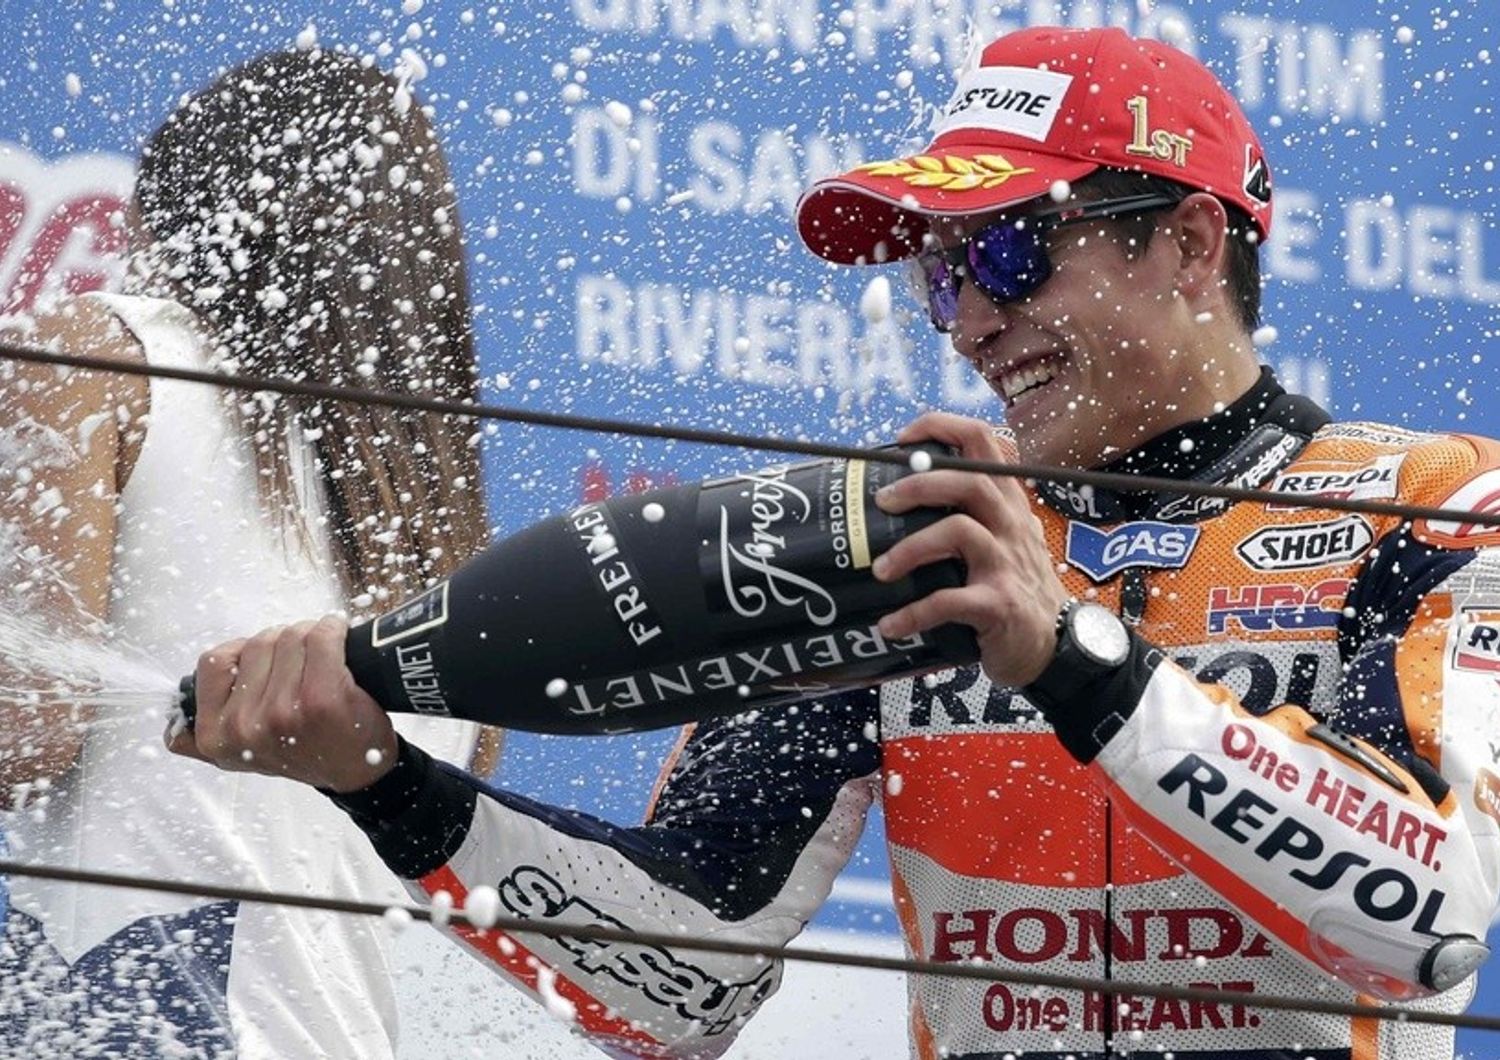 Moto Gp: Marquez vince a San Marino, Valentino Rossi quinto